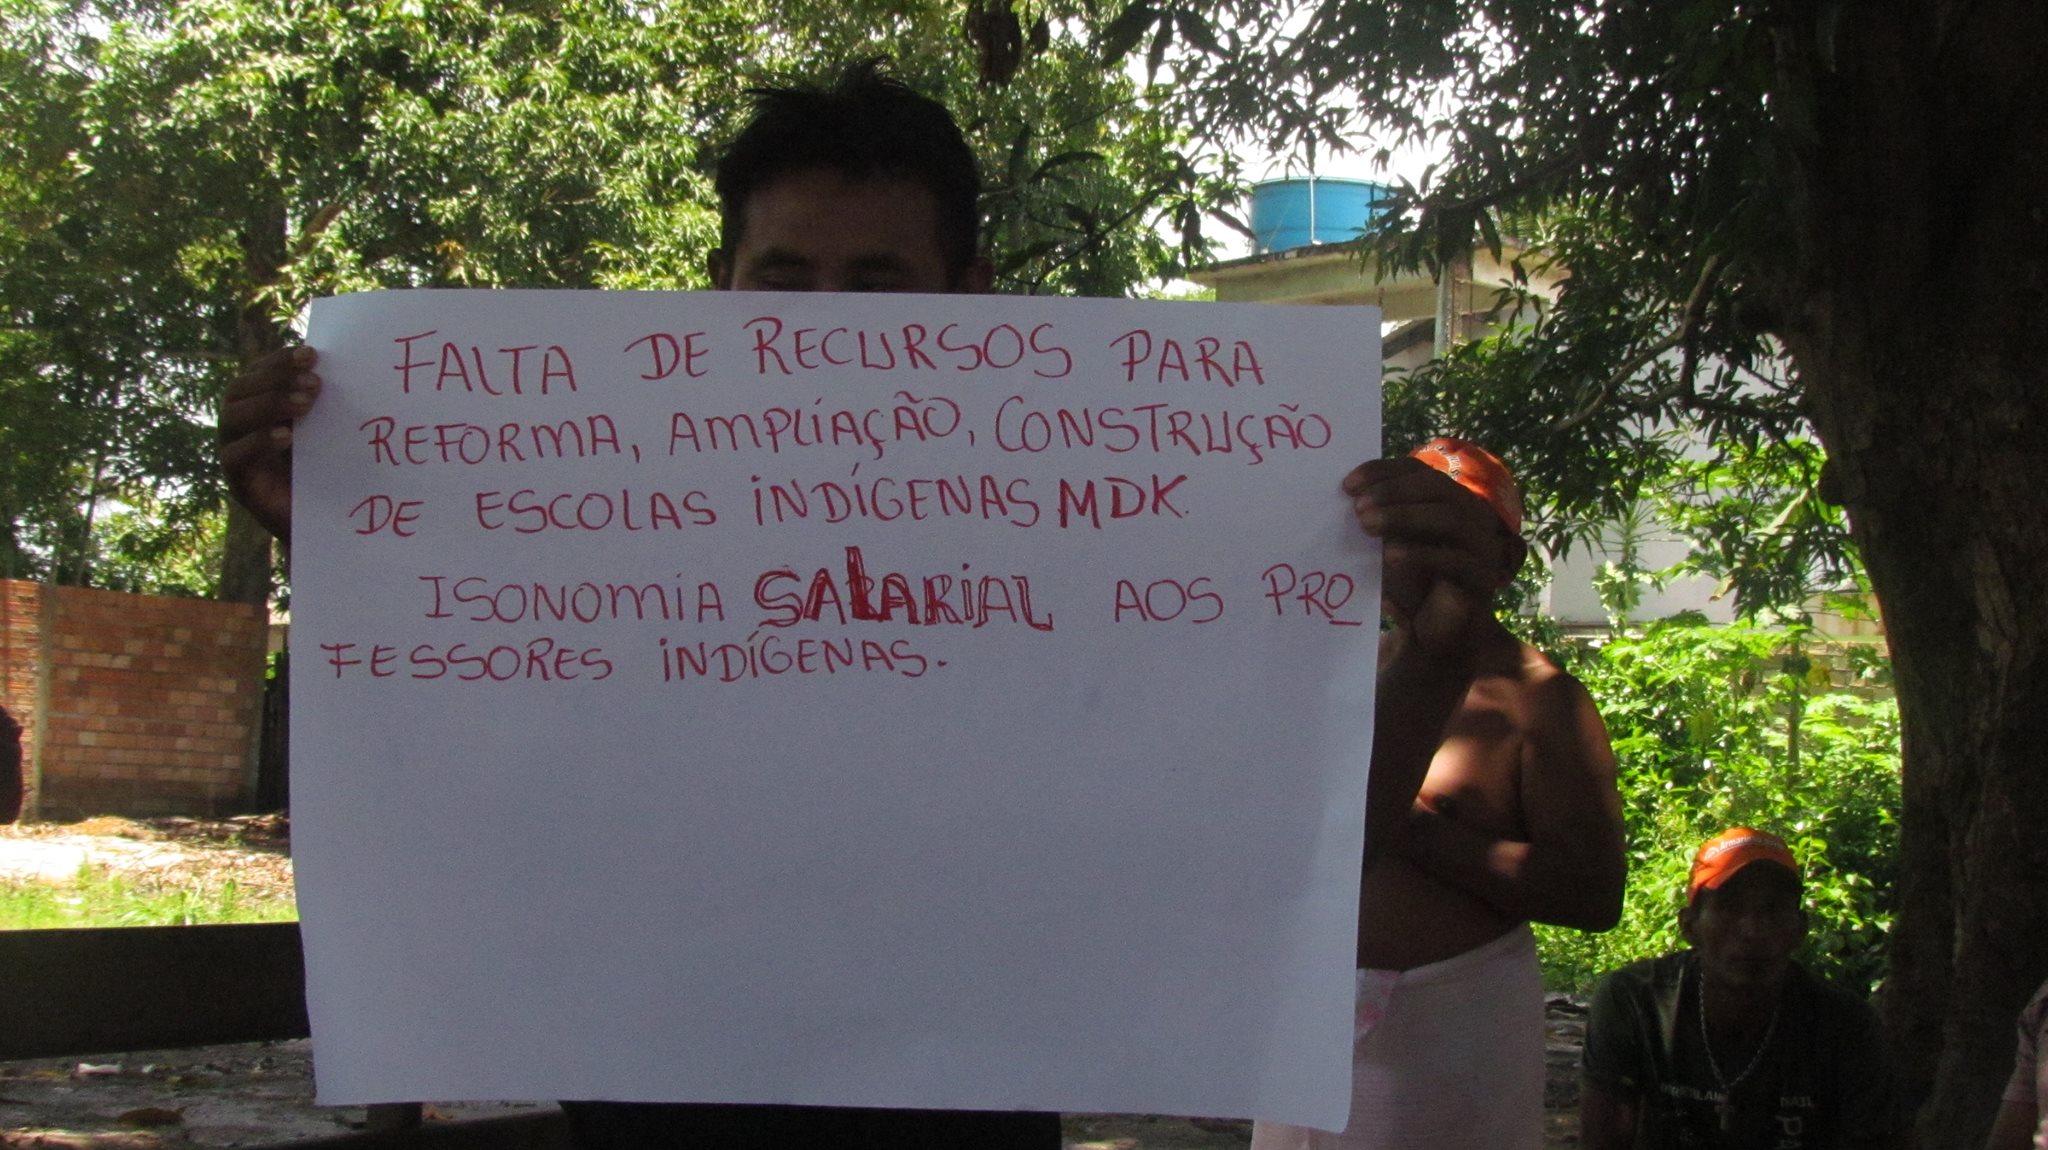 Indígena exibe cartaz com reinvidicações em Jacareacanga (PA). Fotos: Kabaiwun Kaba, vulgo Leusa kaba